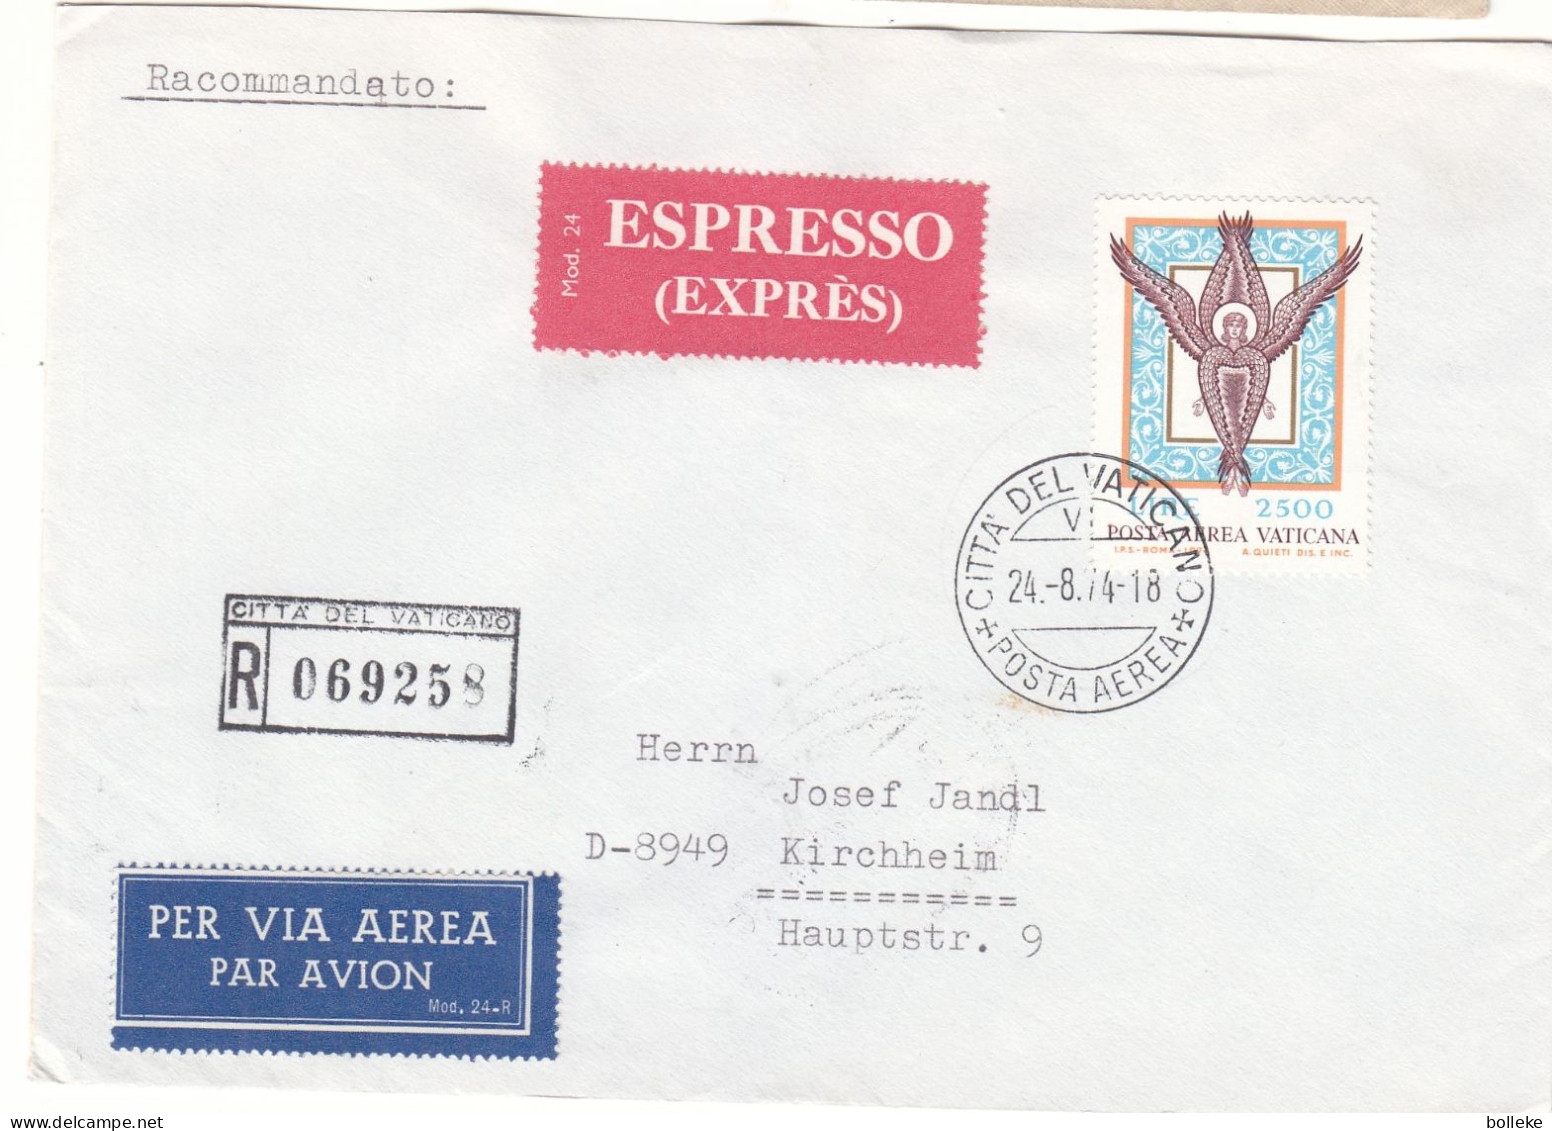 Vatican - Lettre Recom Exprès De 1974 - Oblit Citta Del Vaticano - Exp Vers Kirchheim - Cachet Train Stuttgart München - - Lettres & Documents